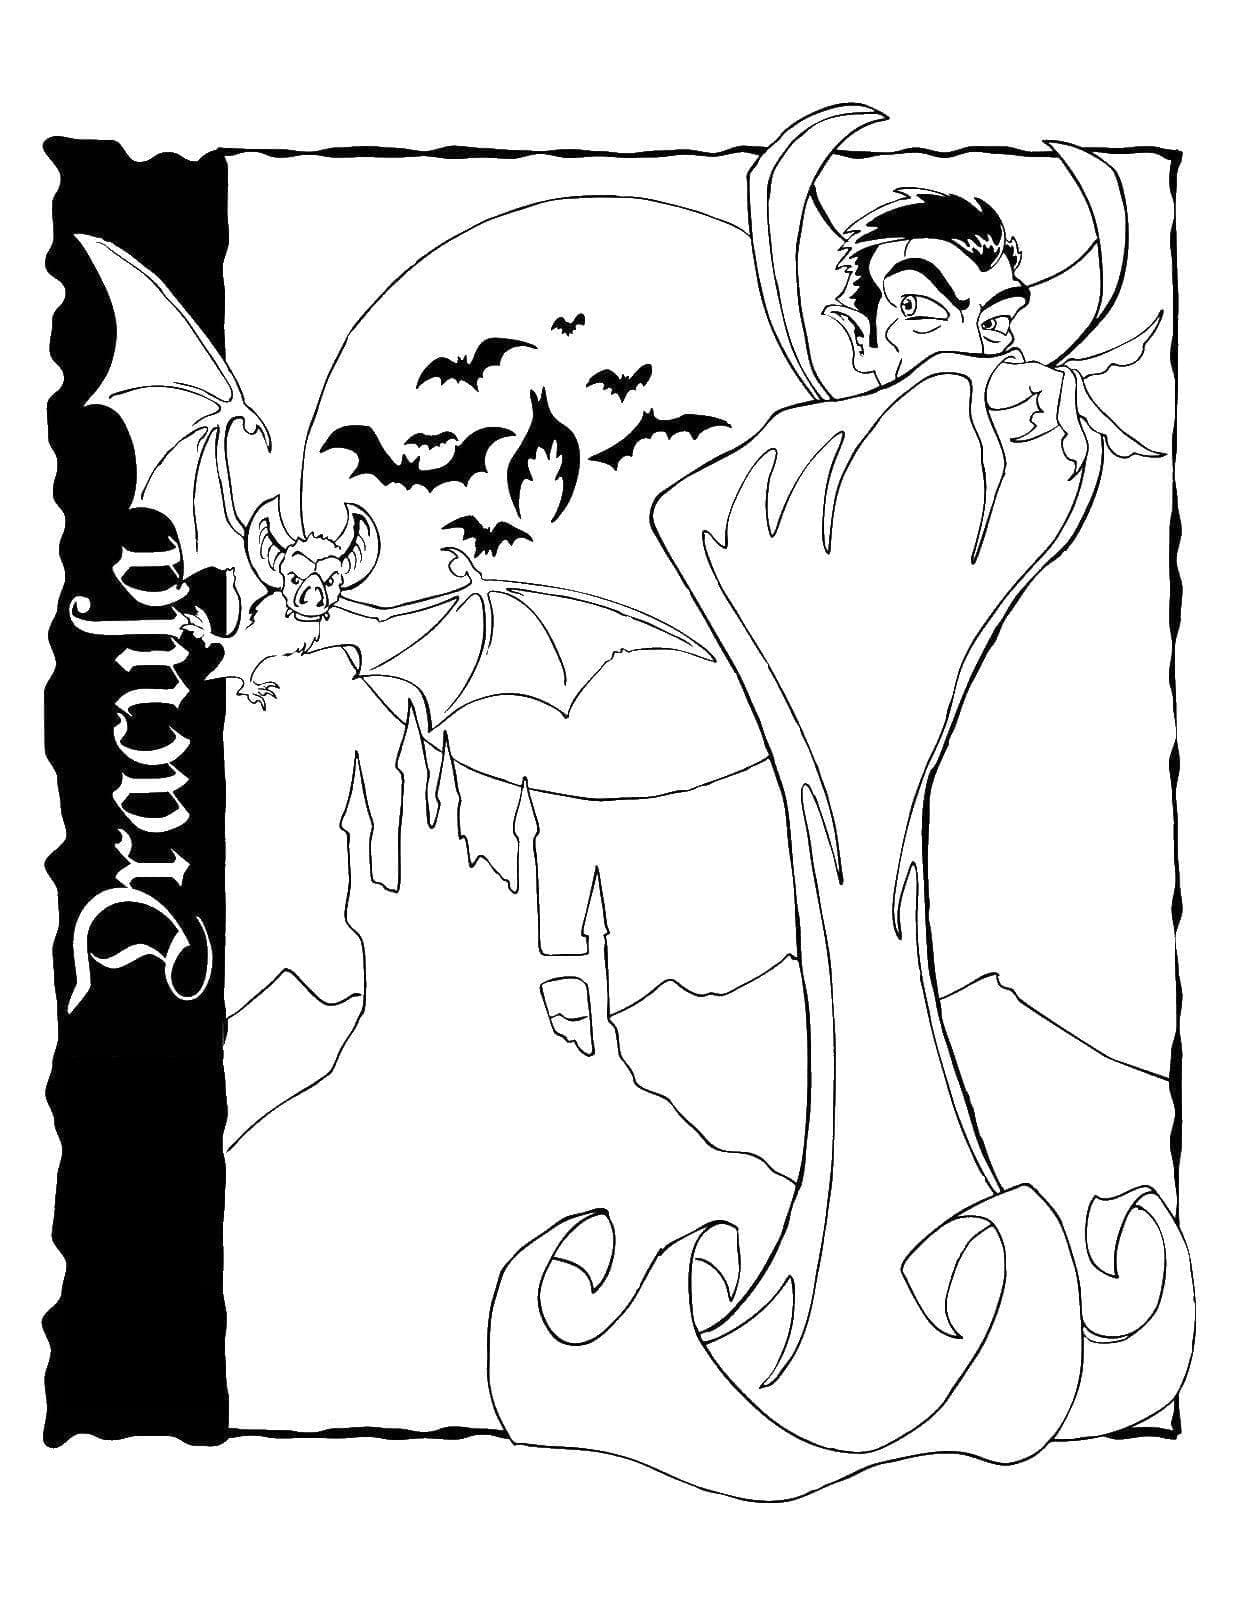 Dracula et les Chauves-souris coloring page